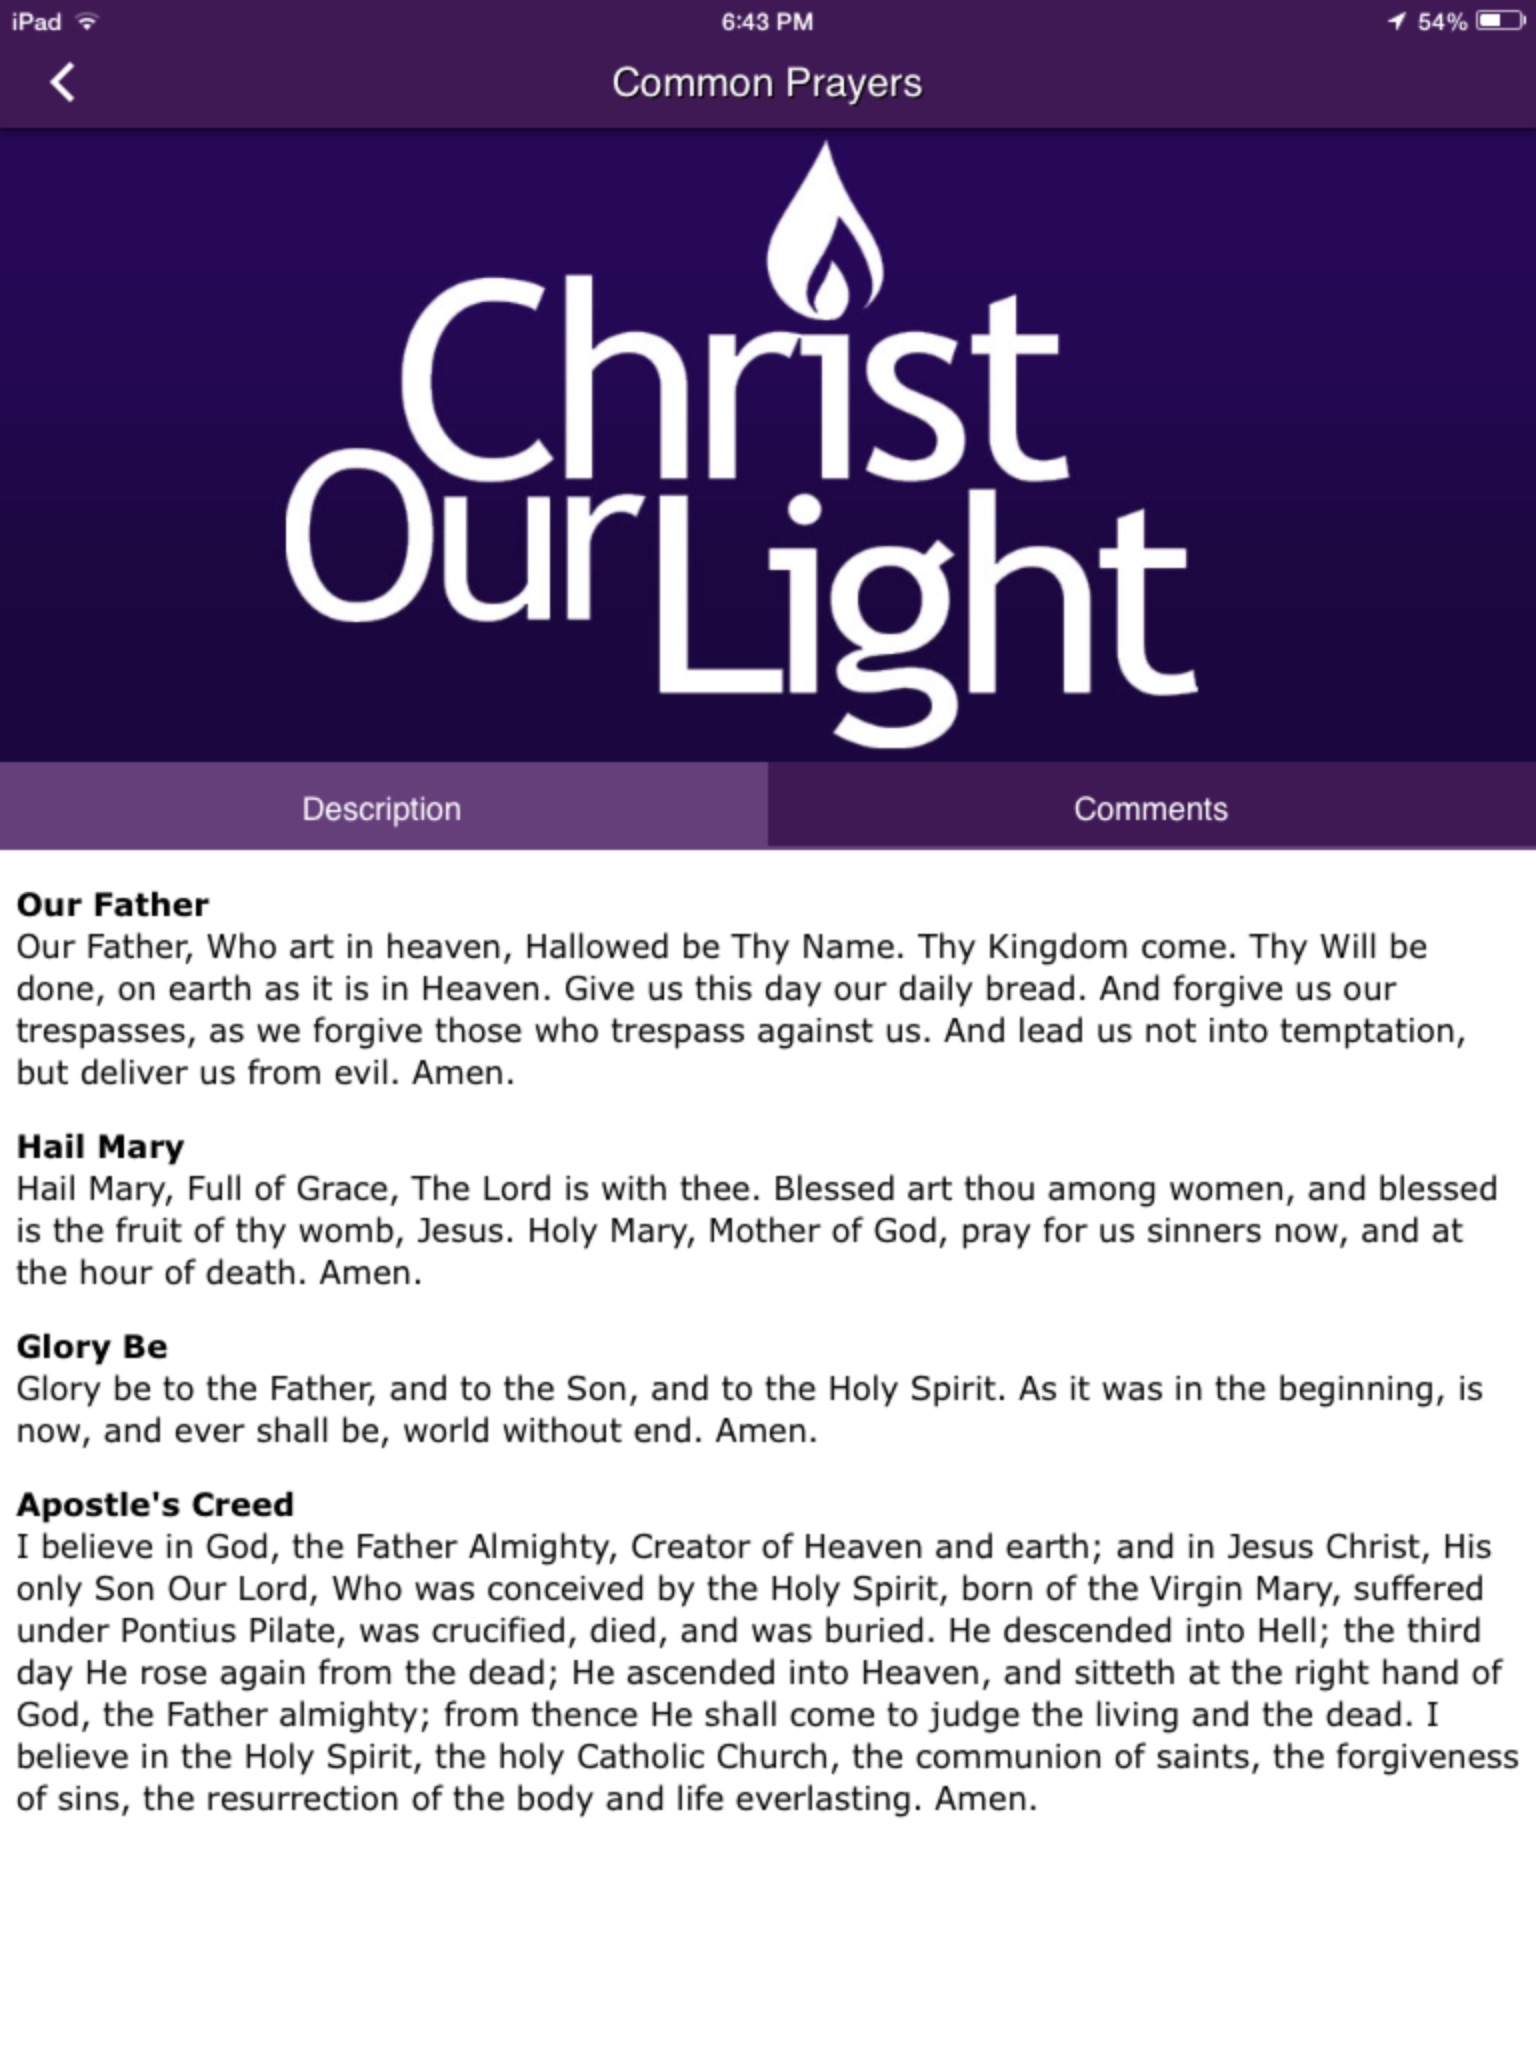 Christ our Light - Cherry Hill screenshot 3